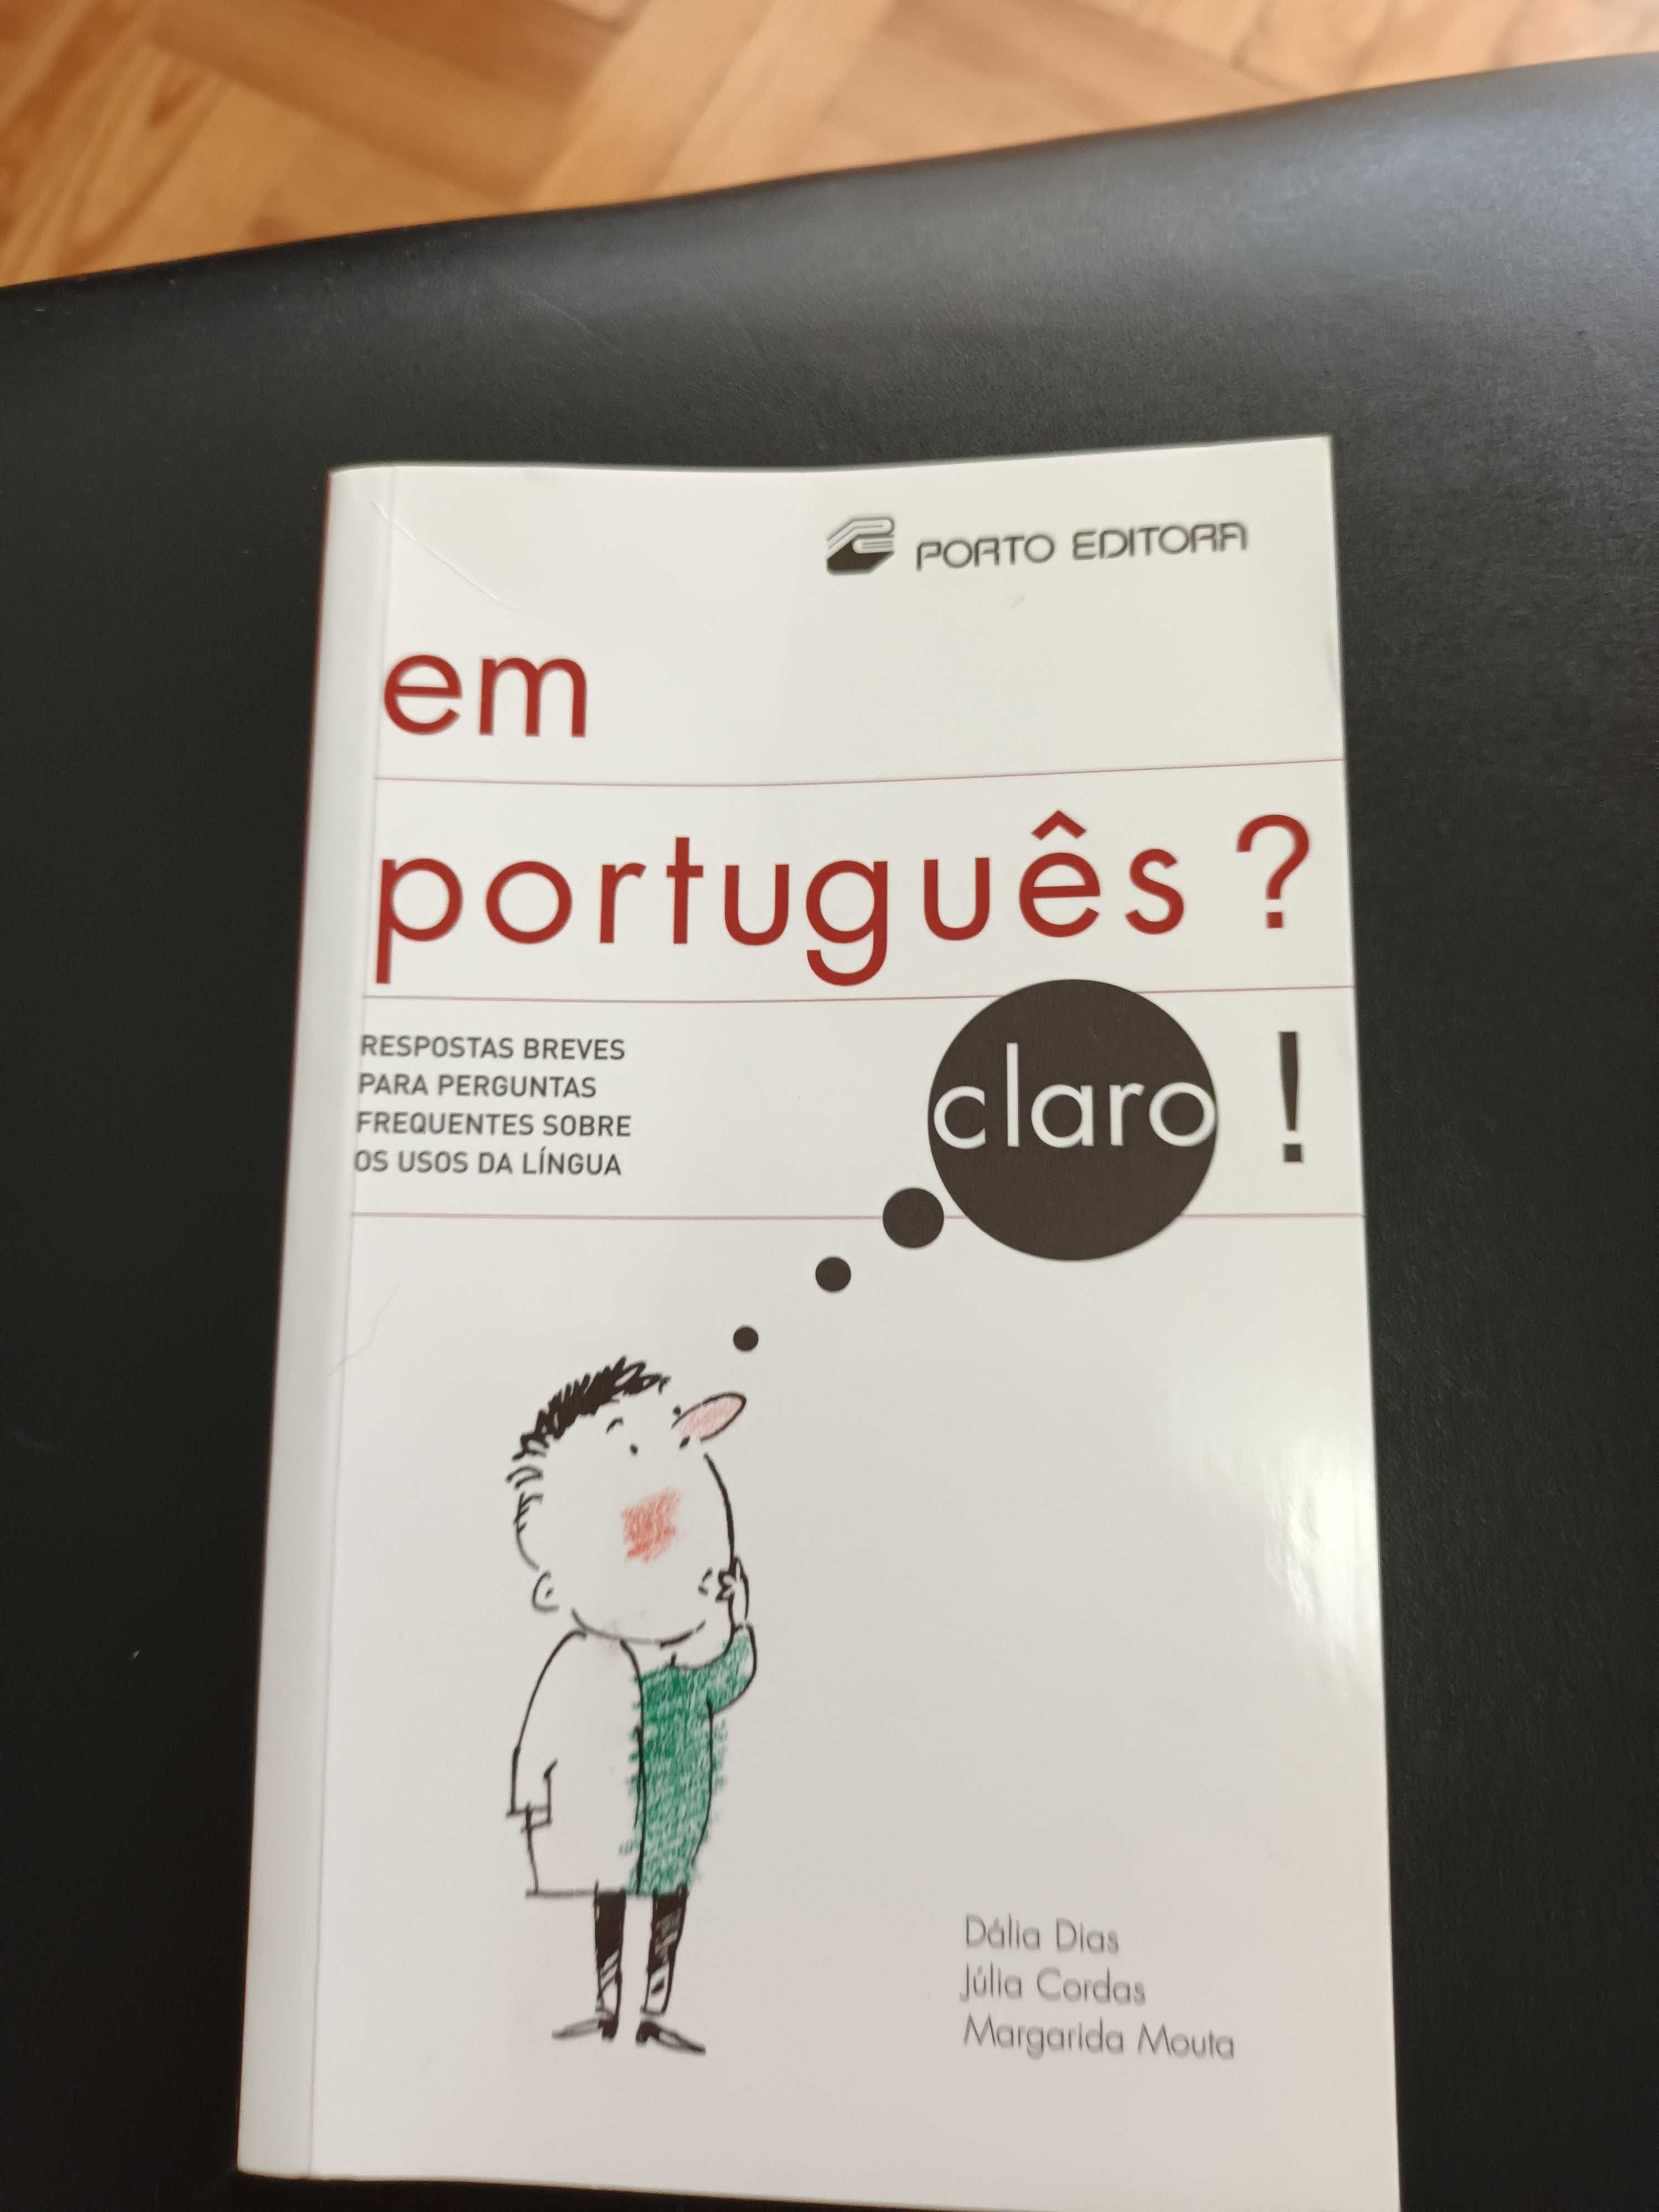 Livro de português  "Em Português?"